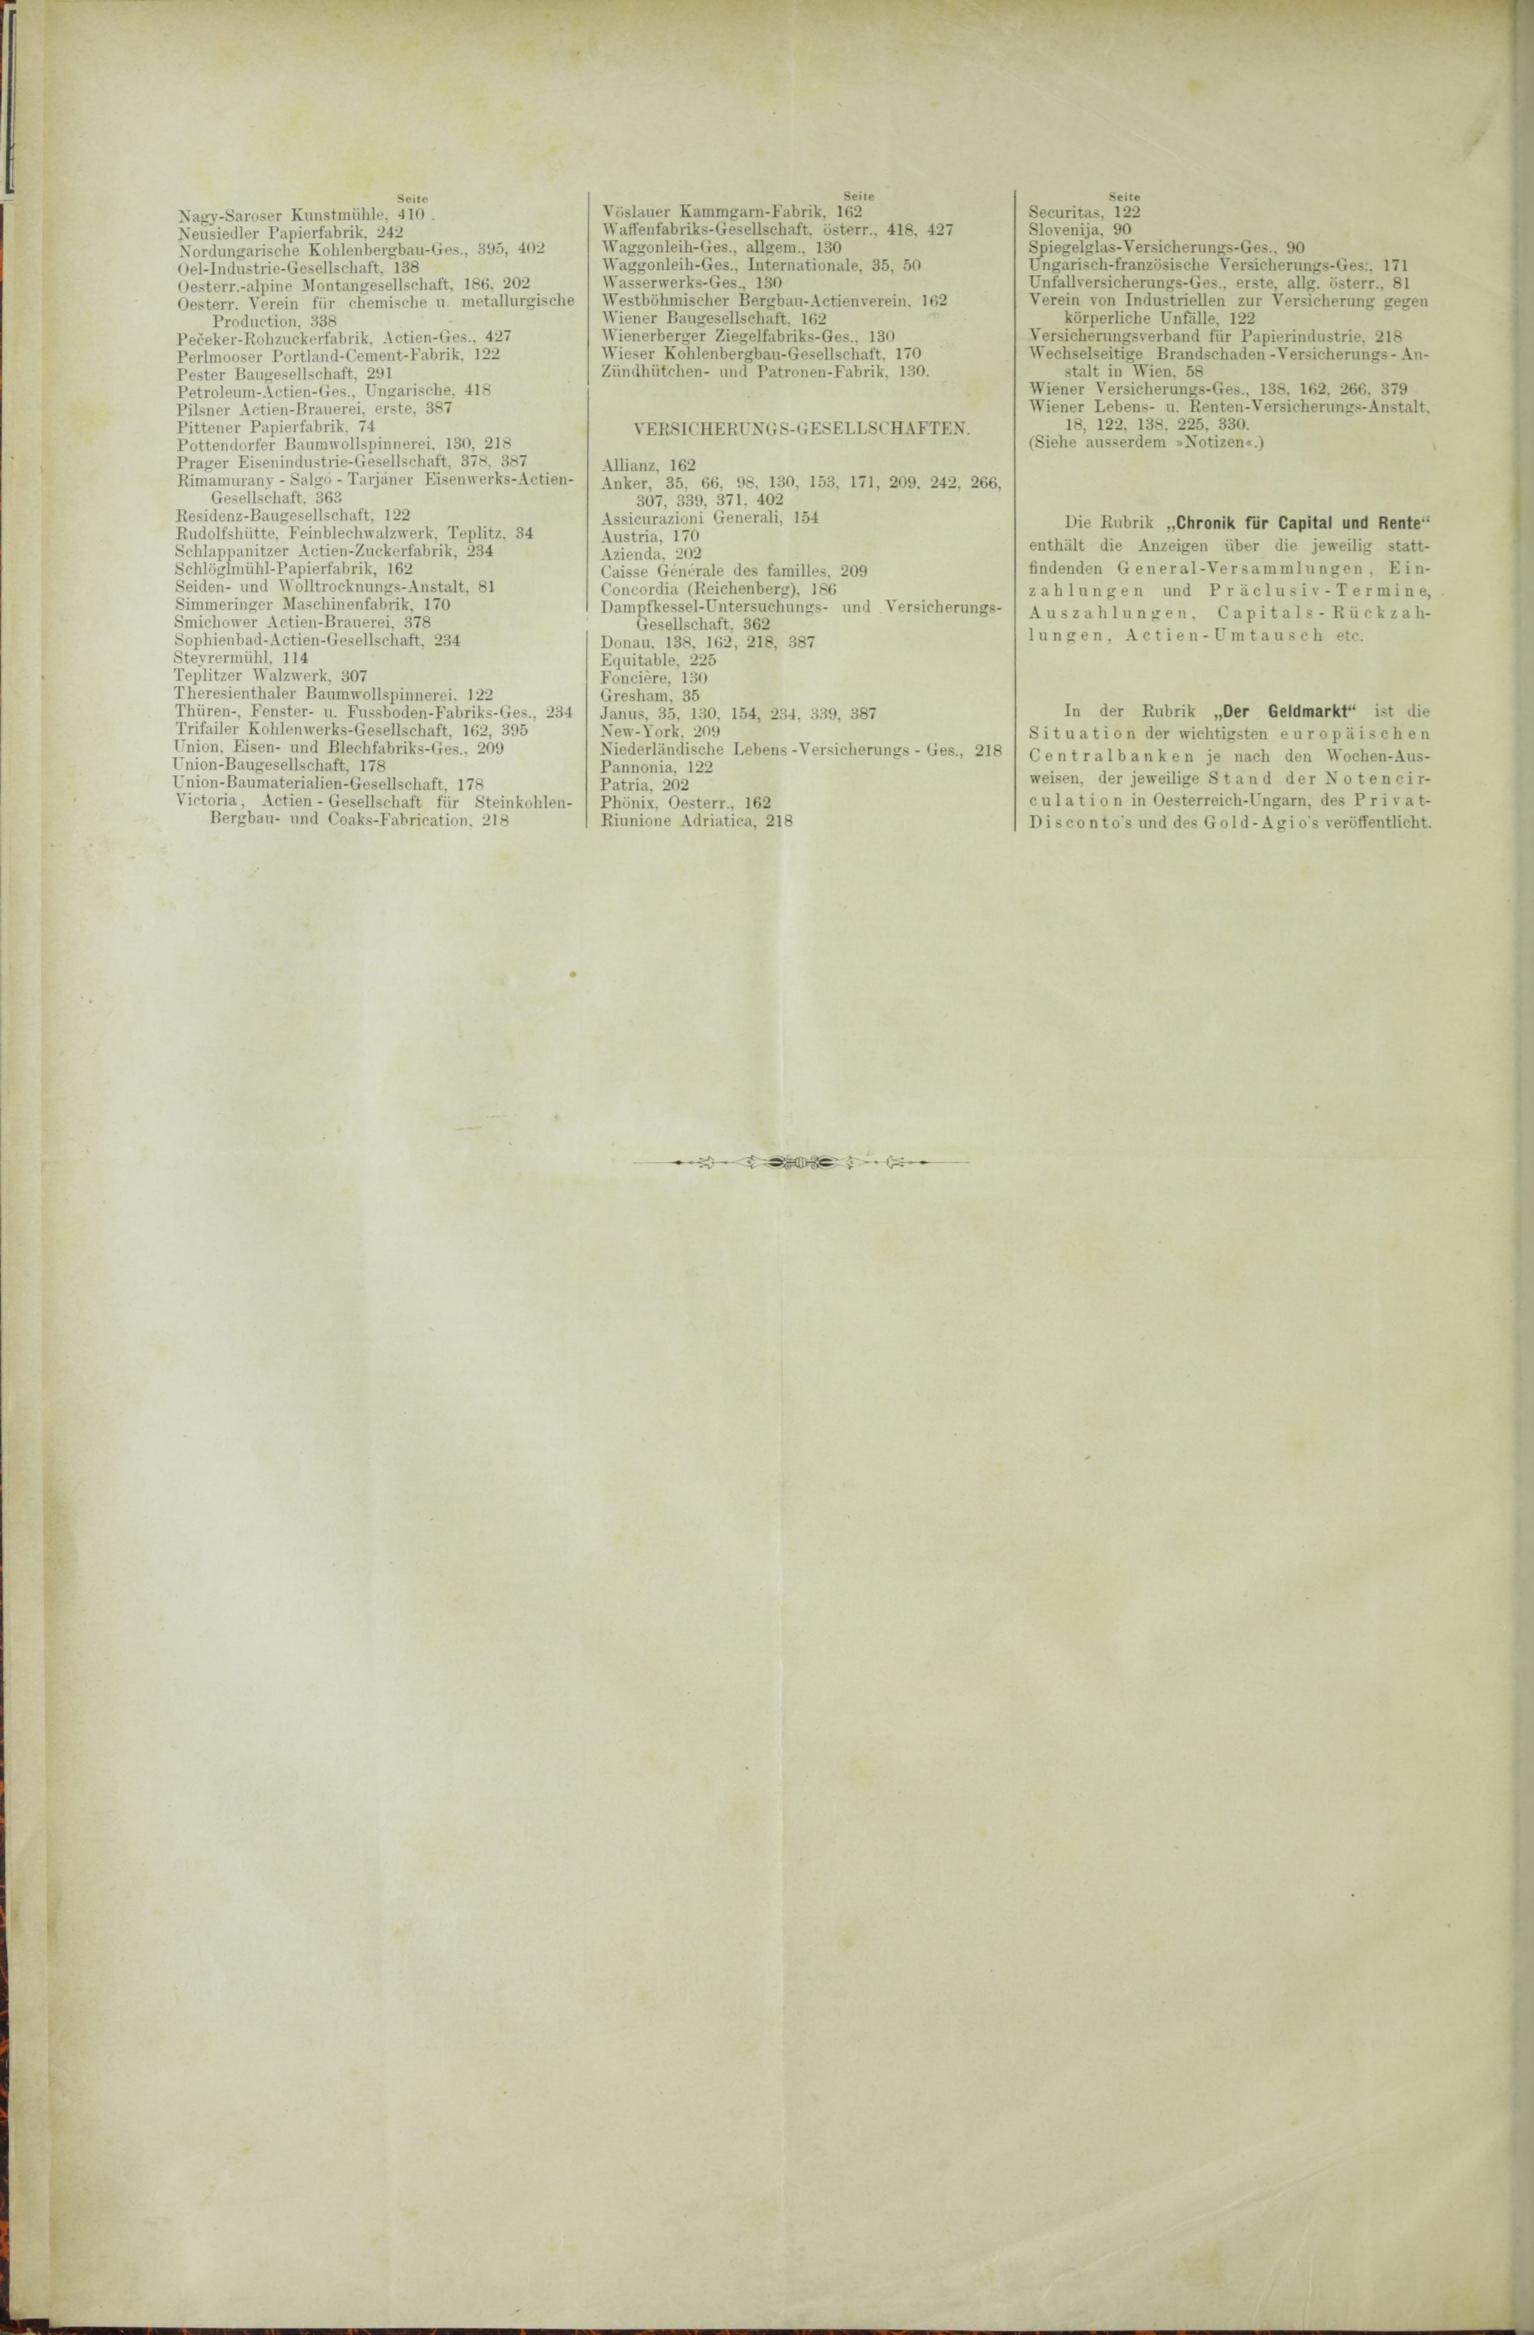 Der Tresor 08.10.1885 - Seite 12